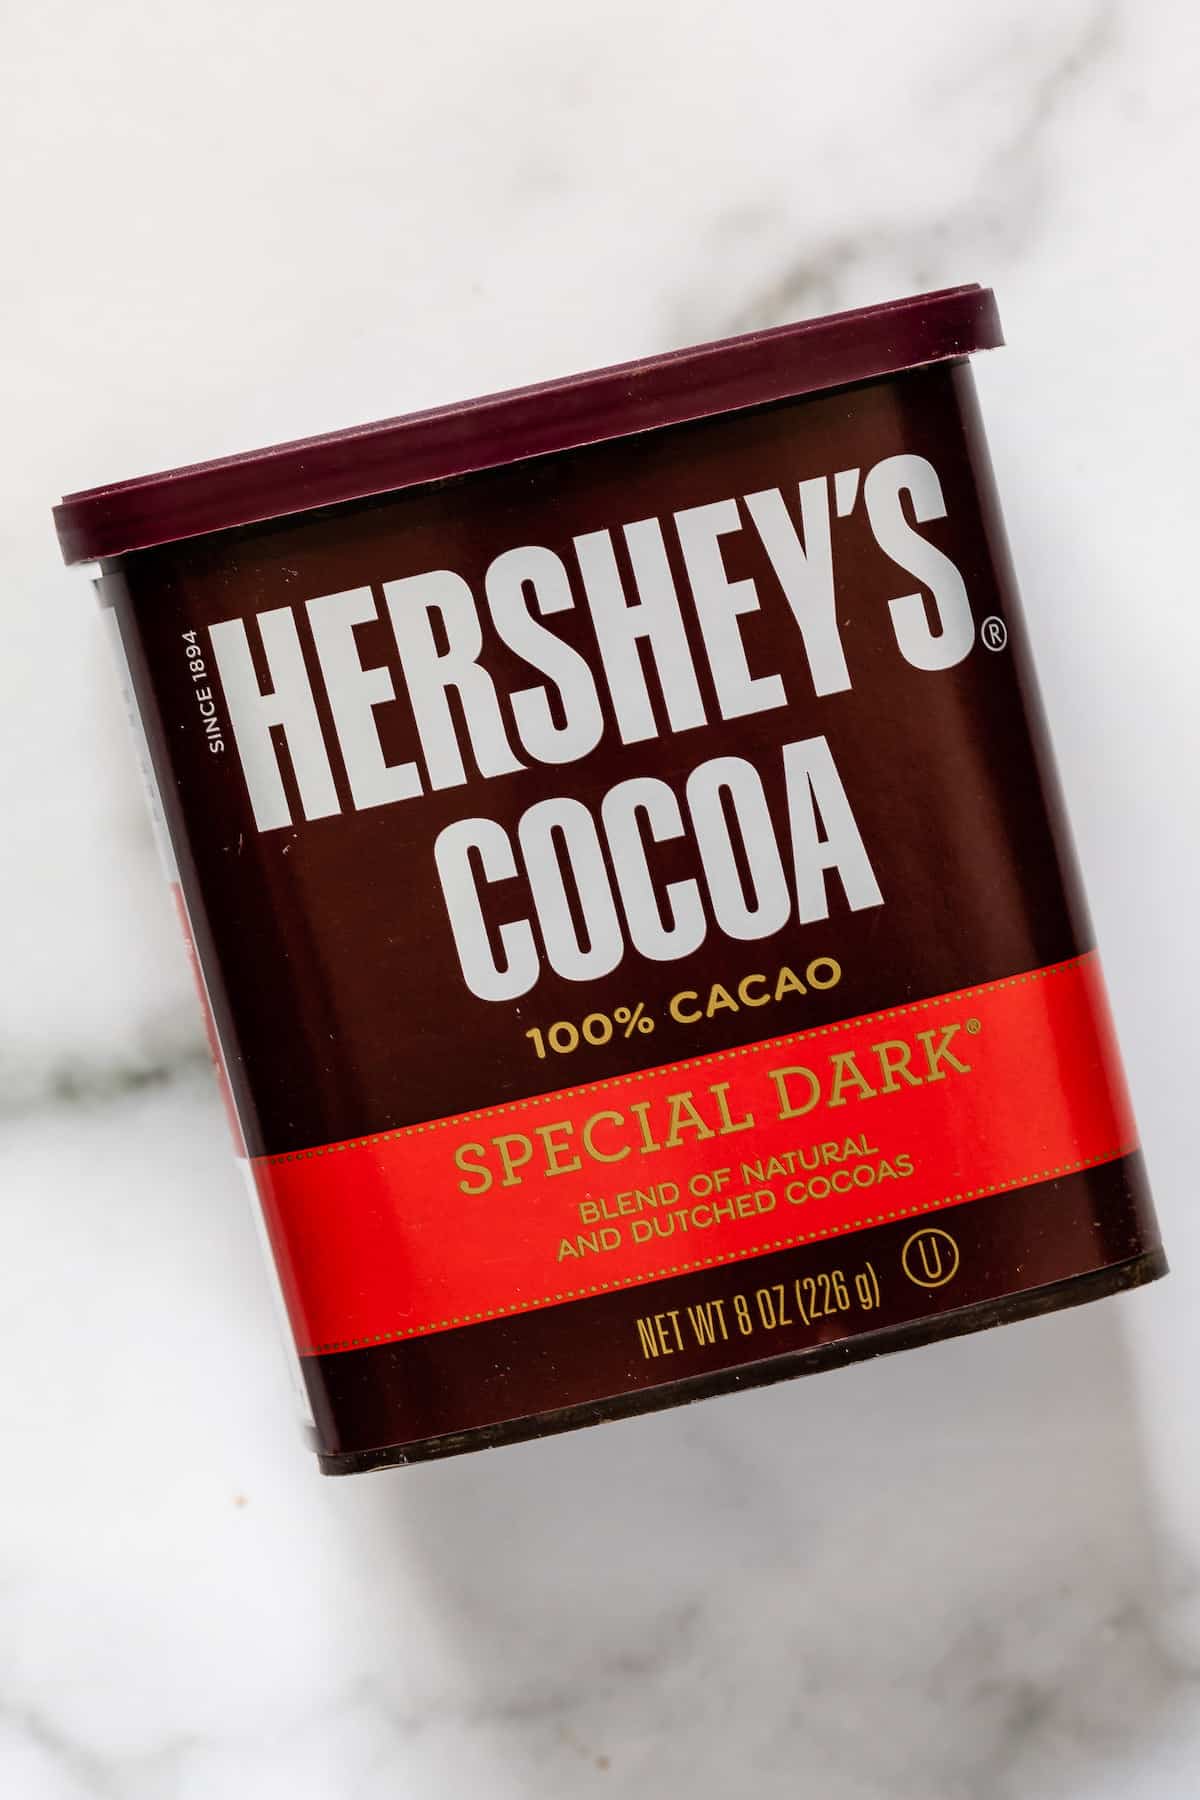 hersheys cocoa special dark box